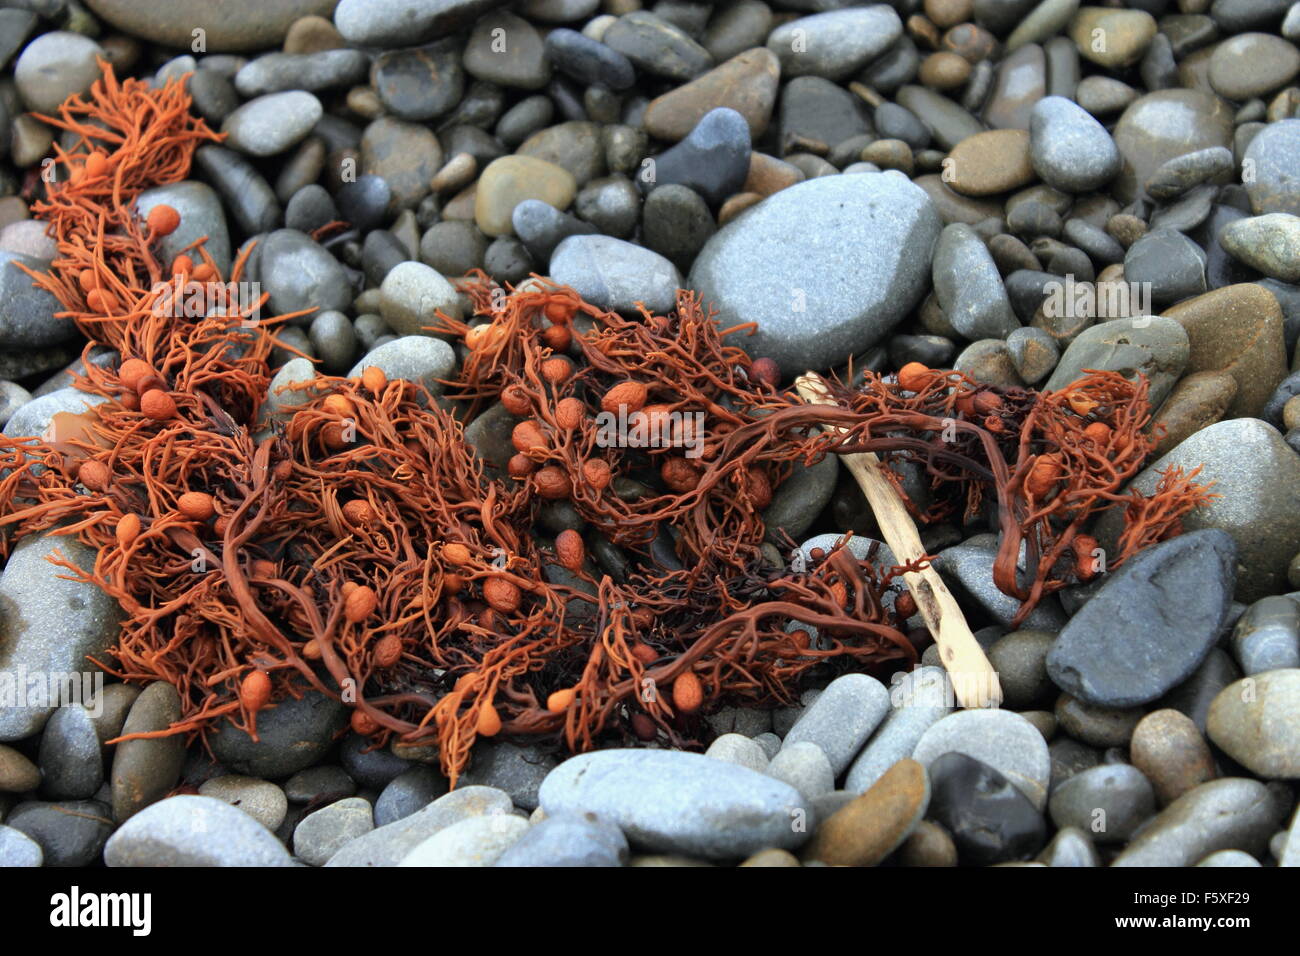 Seaweed on a stony beach Stock Photo